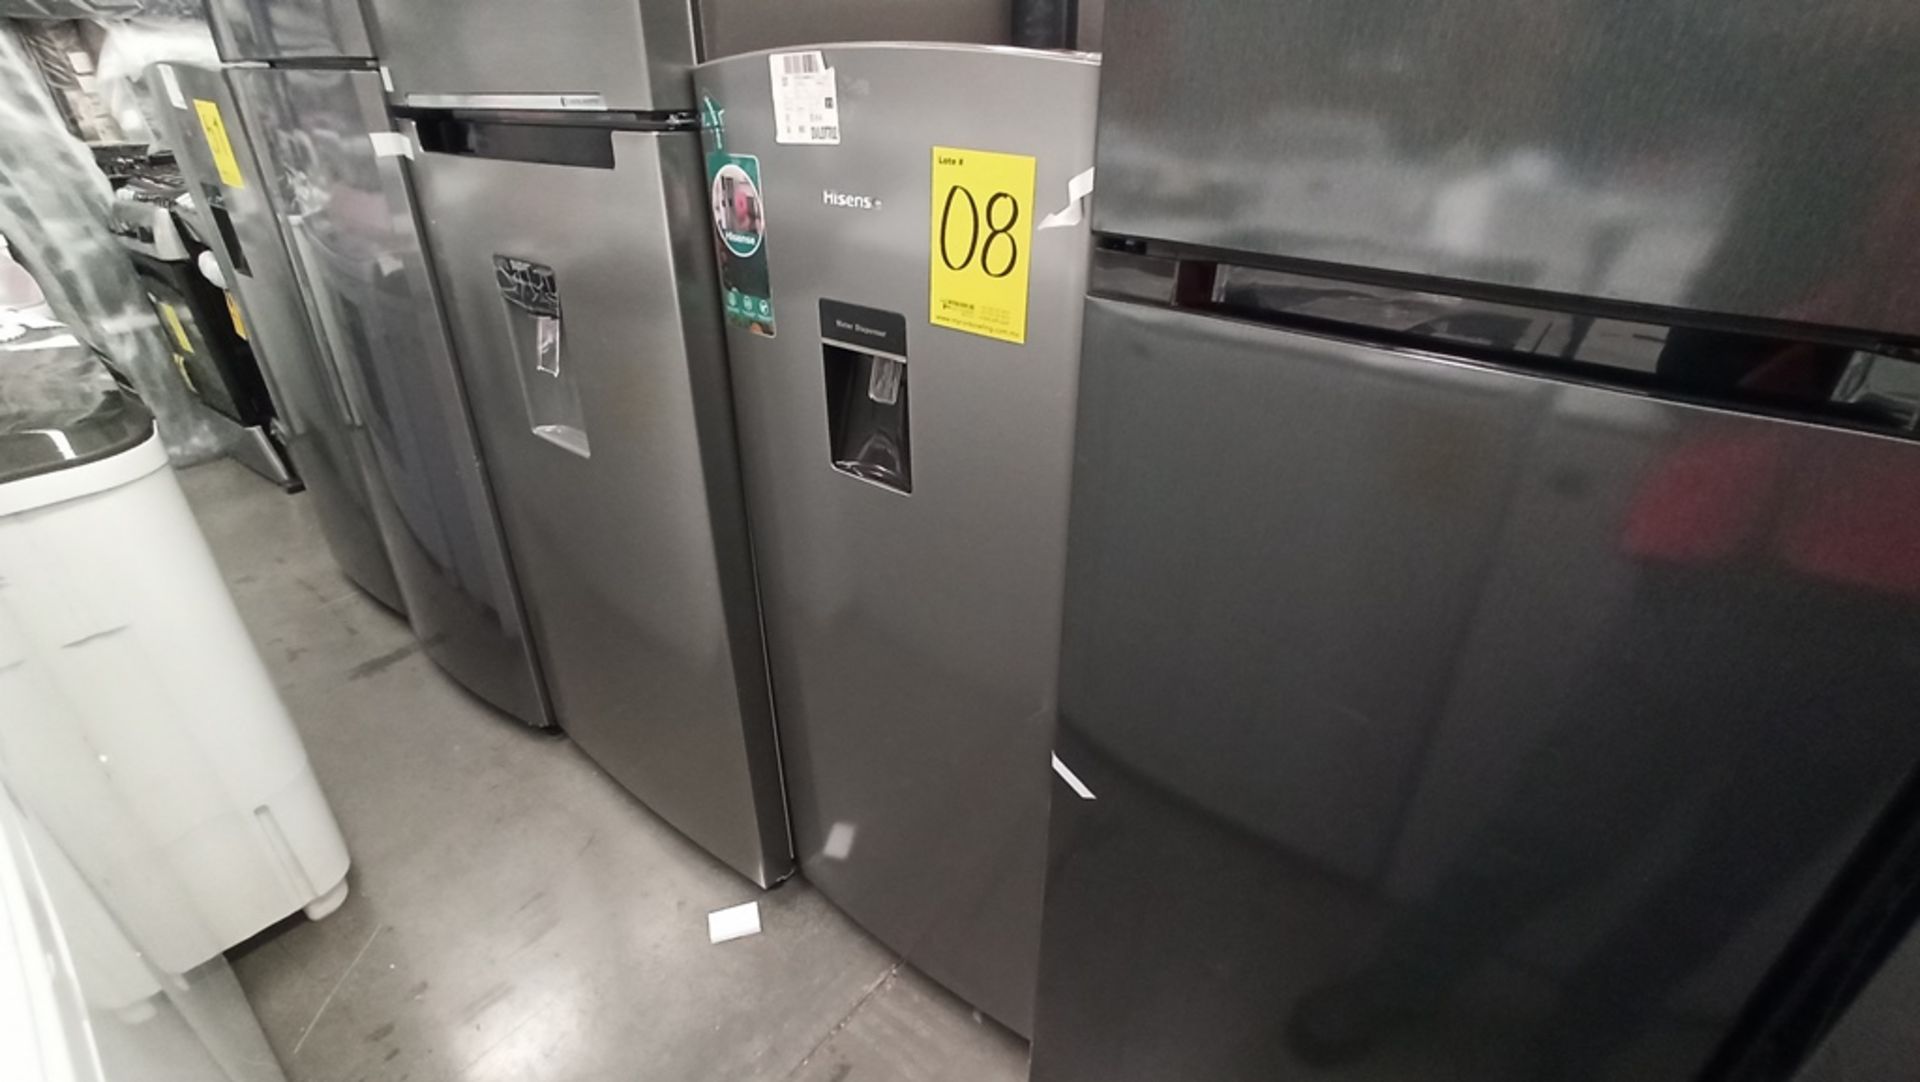 Lote De 2 Refrigeradores Contiene: 1 Refrigerador Marca HISENSE, Modelo RR63D6WGX, No De Serie - Image 3 of 18